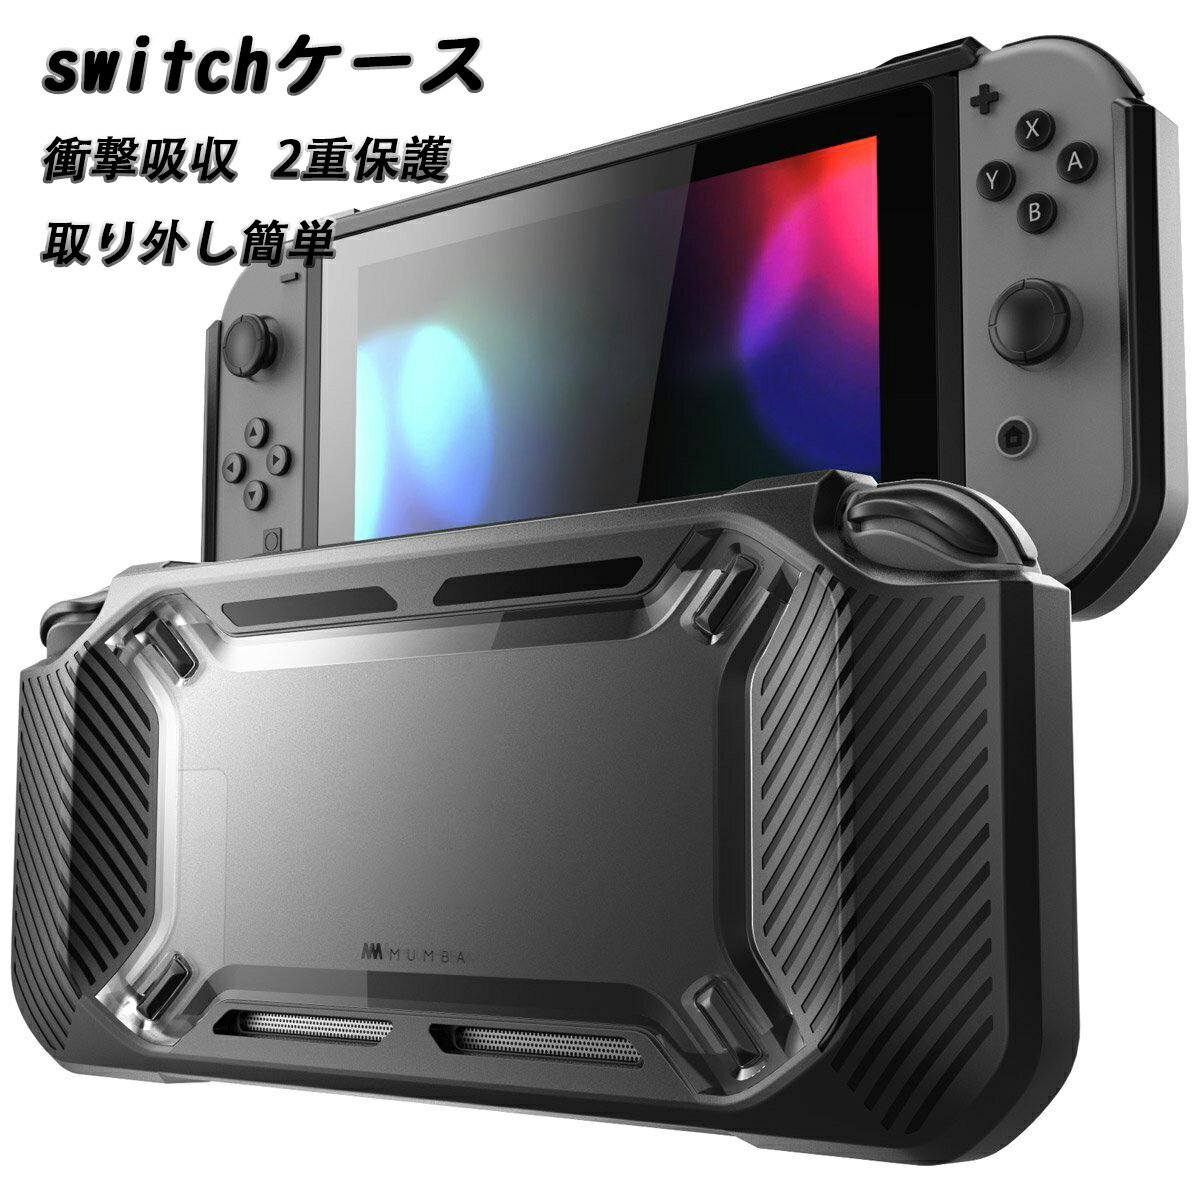 ニンテンドースイッチケース 耐衝撃 任天堂 switch ケース 2重保護 カバー ブラック シリーズ Nintendo Switch 人体工学デザイン 落下防止 取り外し簡単 傷防止 衝撃吸収(bw5132)